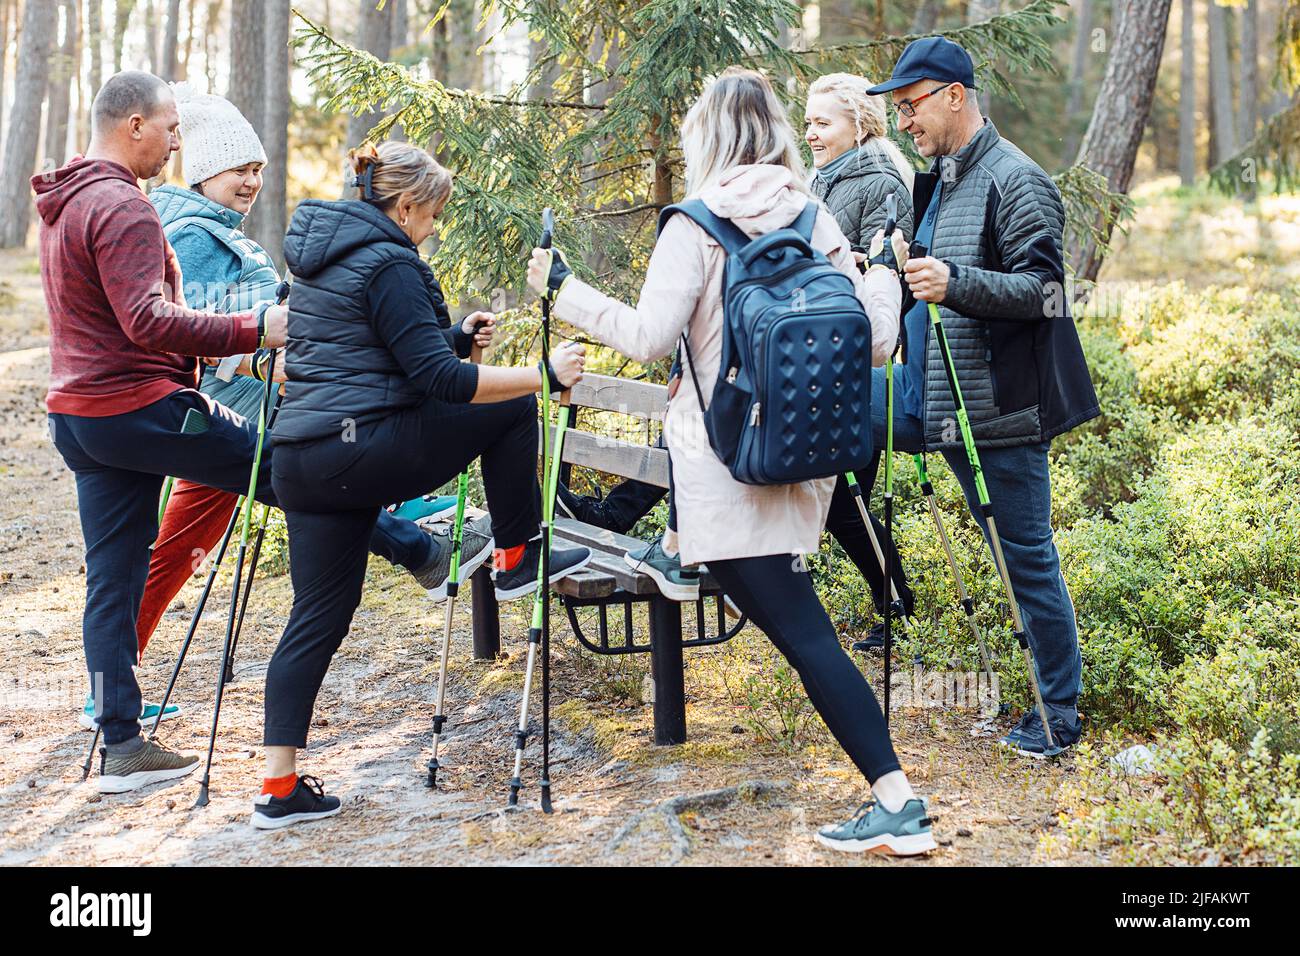 Gruppo di persone anziane che imparano a fare nordic walking con bastone da trekking nella foresta, si levano in piedi una gamba sulla panca. Esercitandosi Foto Stock